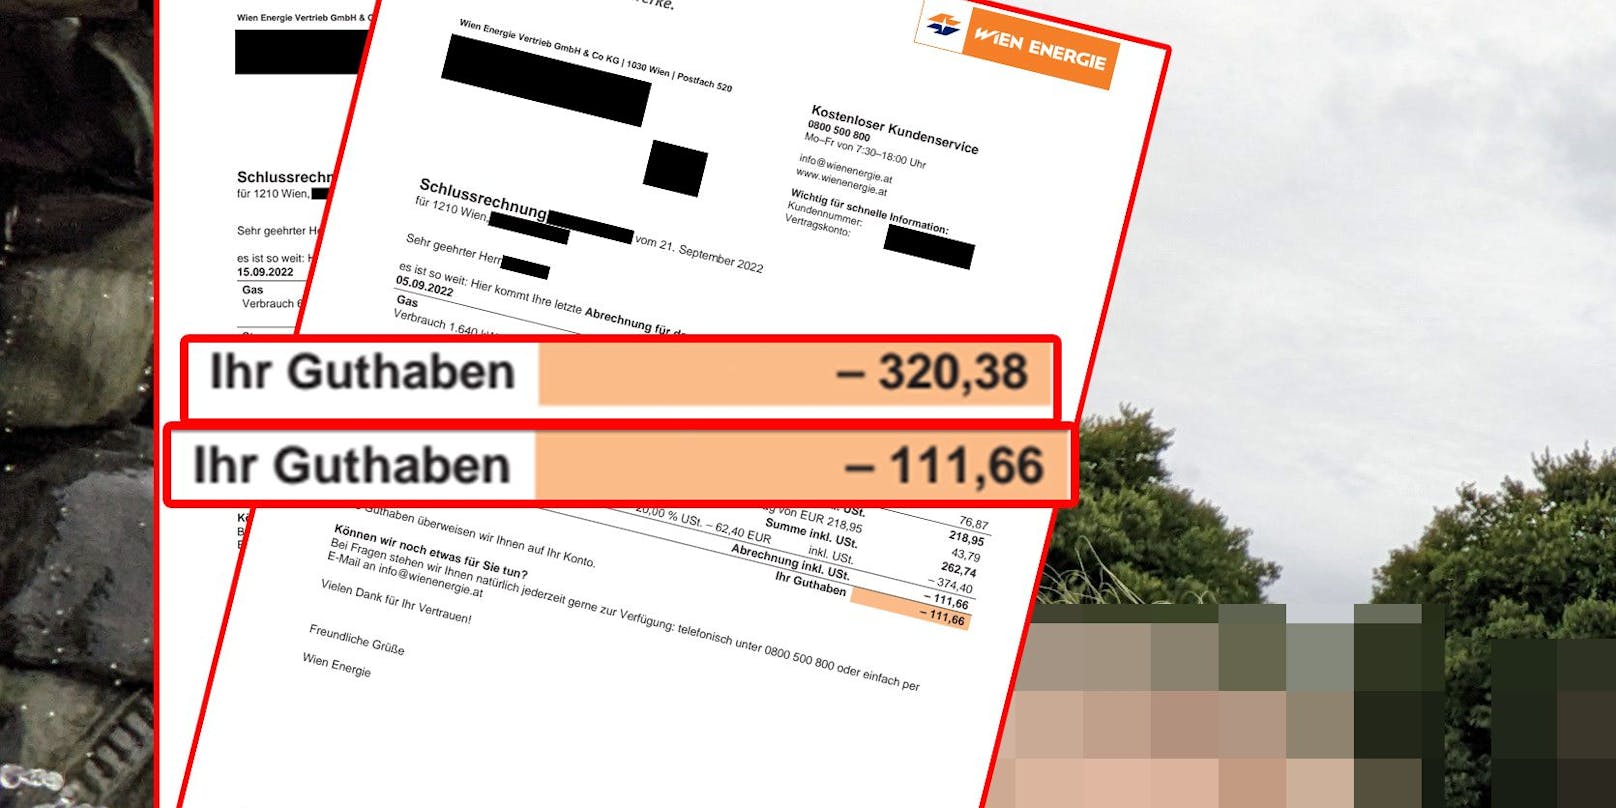 Der Wiener lebt nämlich energiesparsam und wurde dafür mit einer Rückzahlung von 432,04€ belohnt.